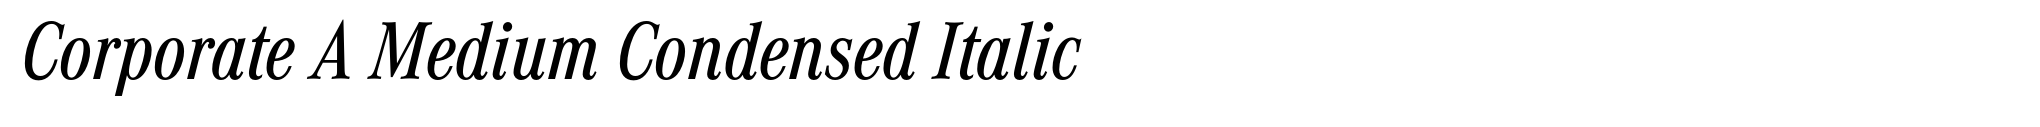 Corporate A Medium Condensed Italic image